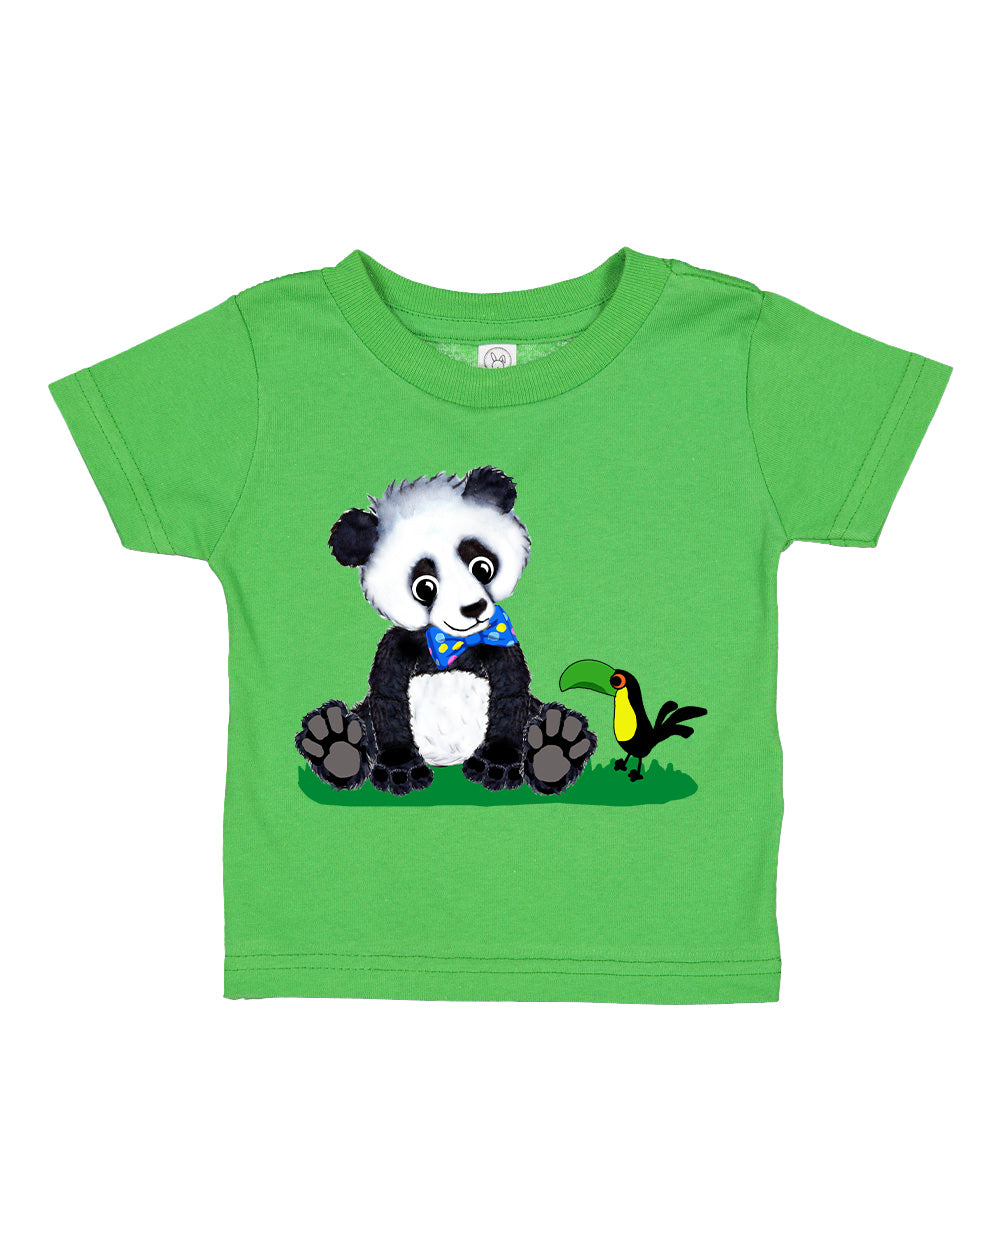 Boy Panda Toddler T-shirt